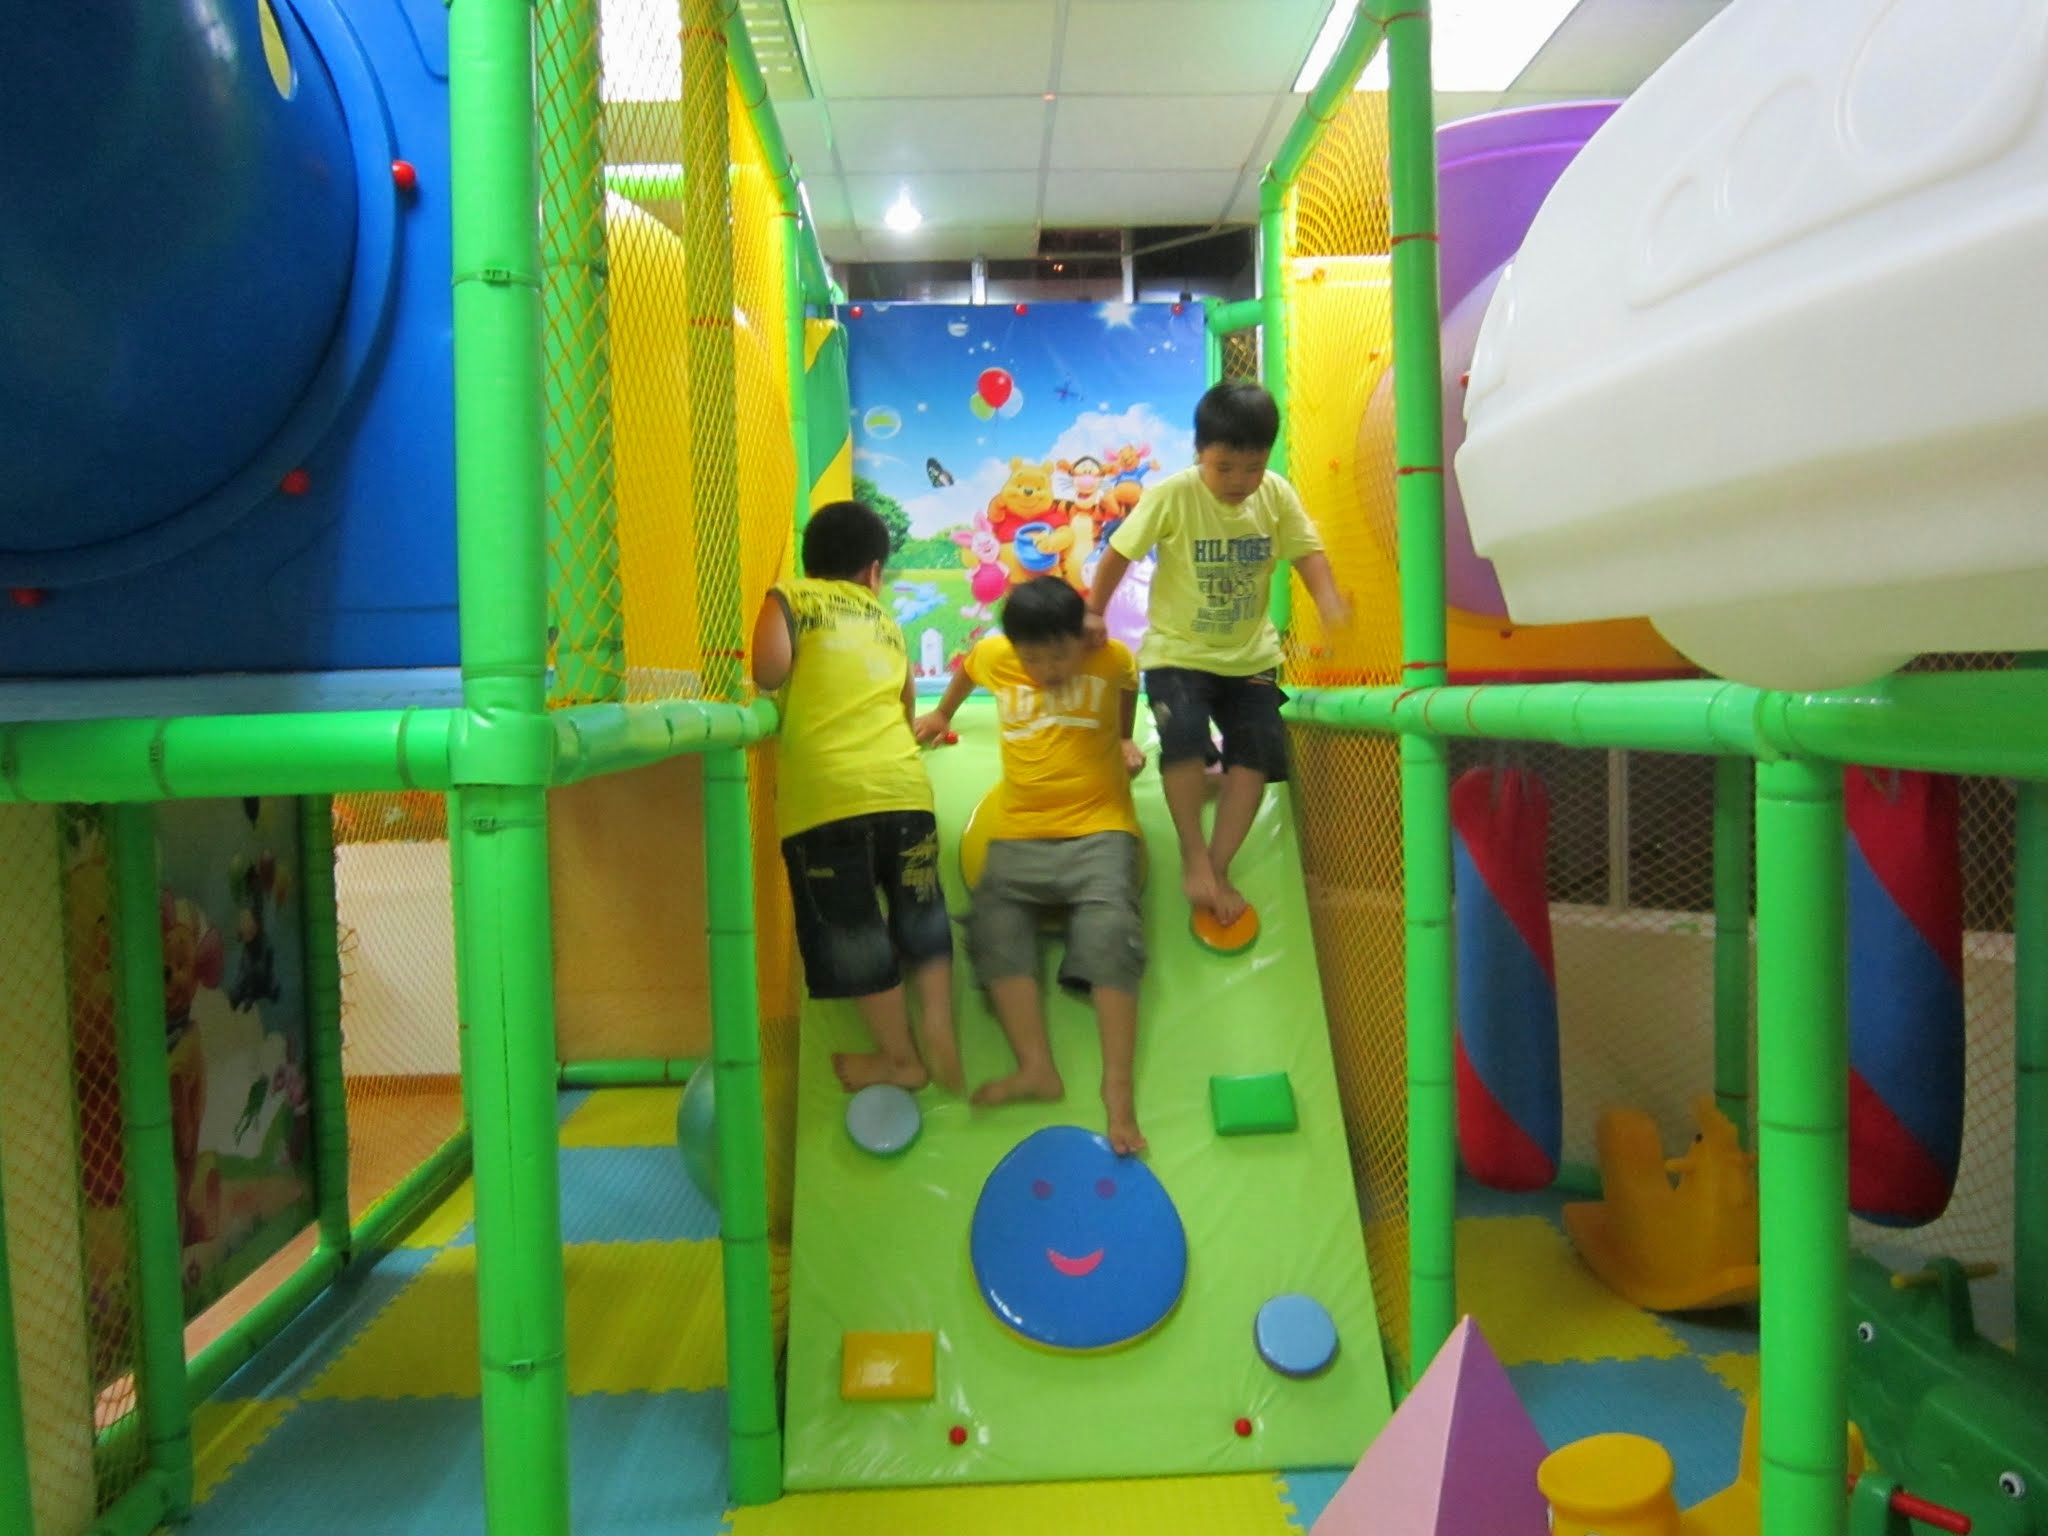 khu vui chơi giải trí ở Đà Nẵng: Fun4baby – Xả bay stress những ngày cuối tuần